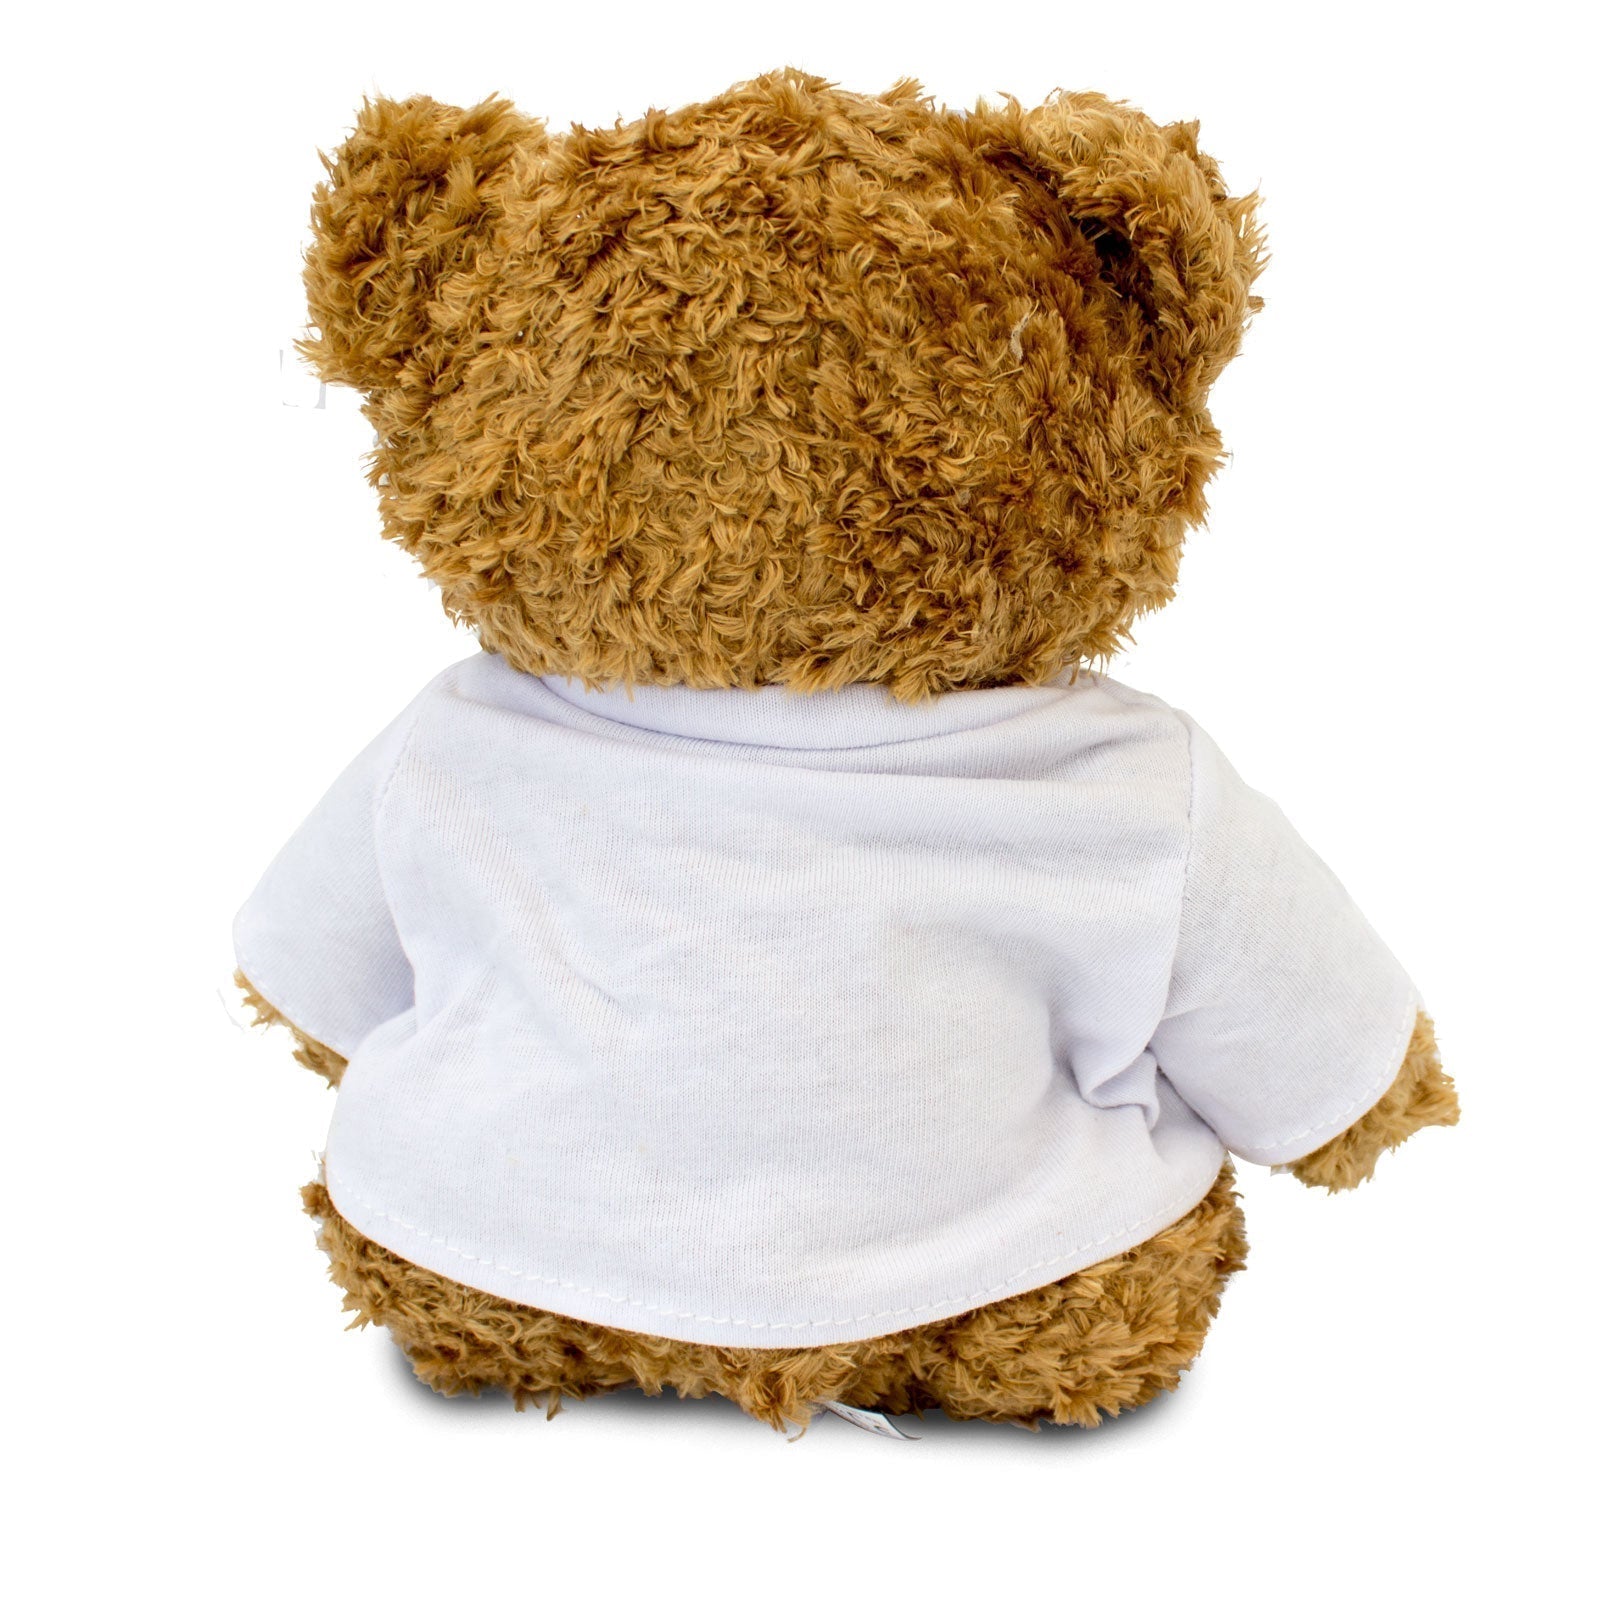 The Greatest Classroom Assistant Ever - Teddy Bear